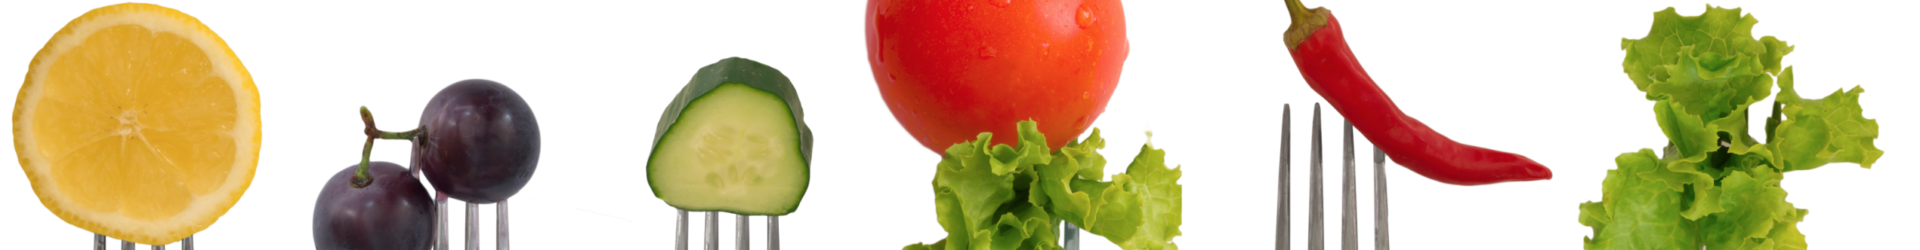 89. Veggies – GMO/Organic